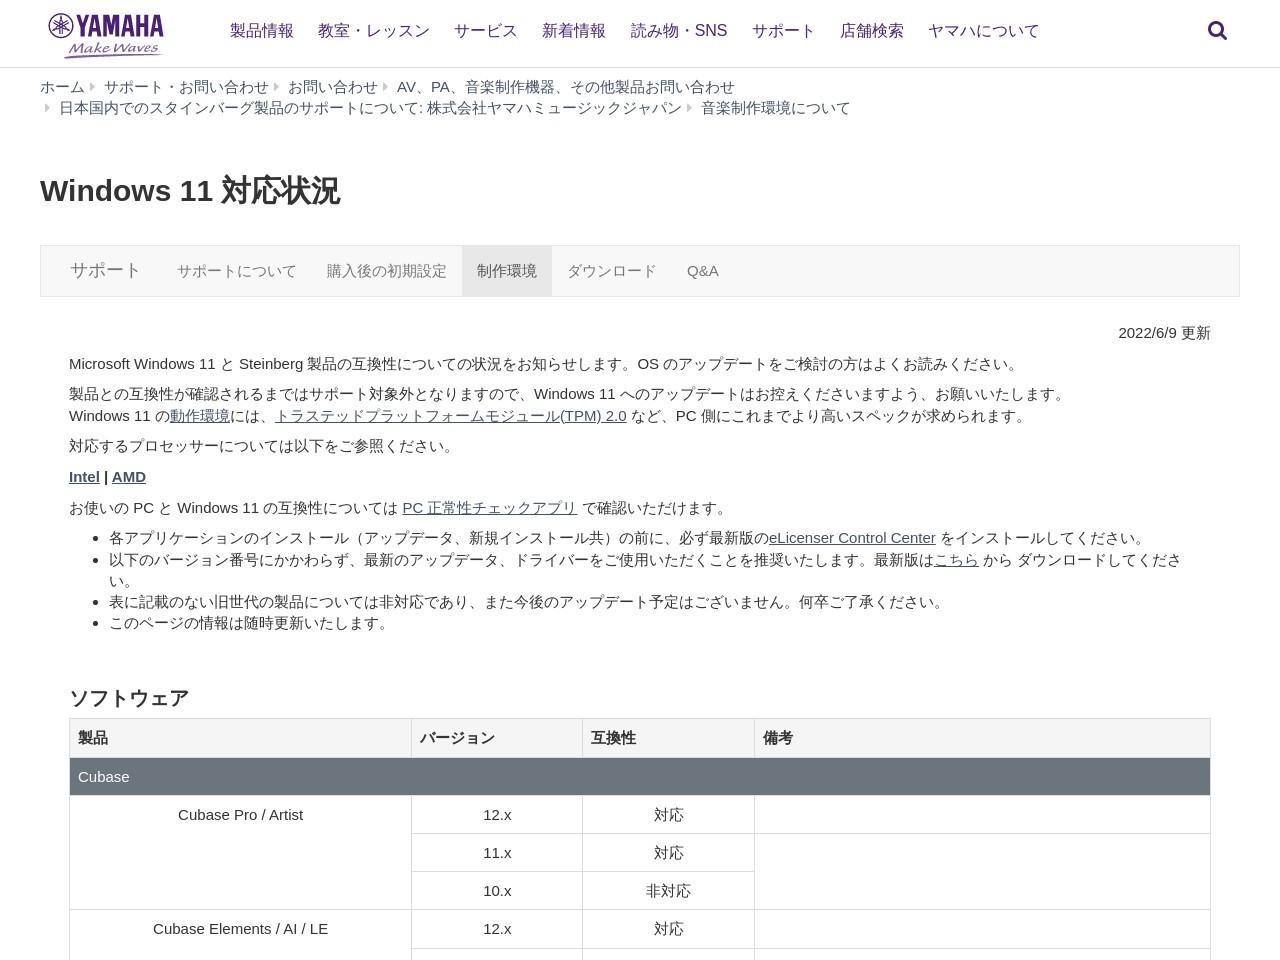 ヤマハ | Windows 11 対応状況 - 日本国内でのスタインバーグ製品のサポートについて: 株式会社ヤマハミュージックジャパン